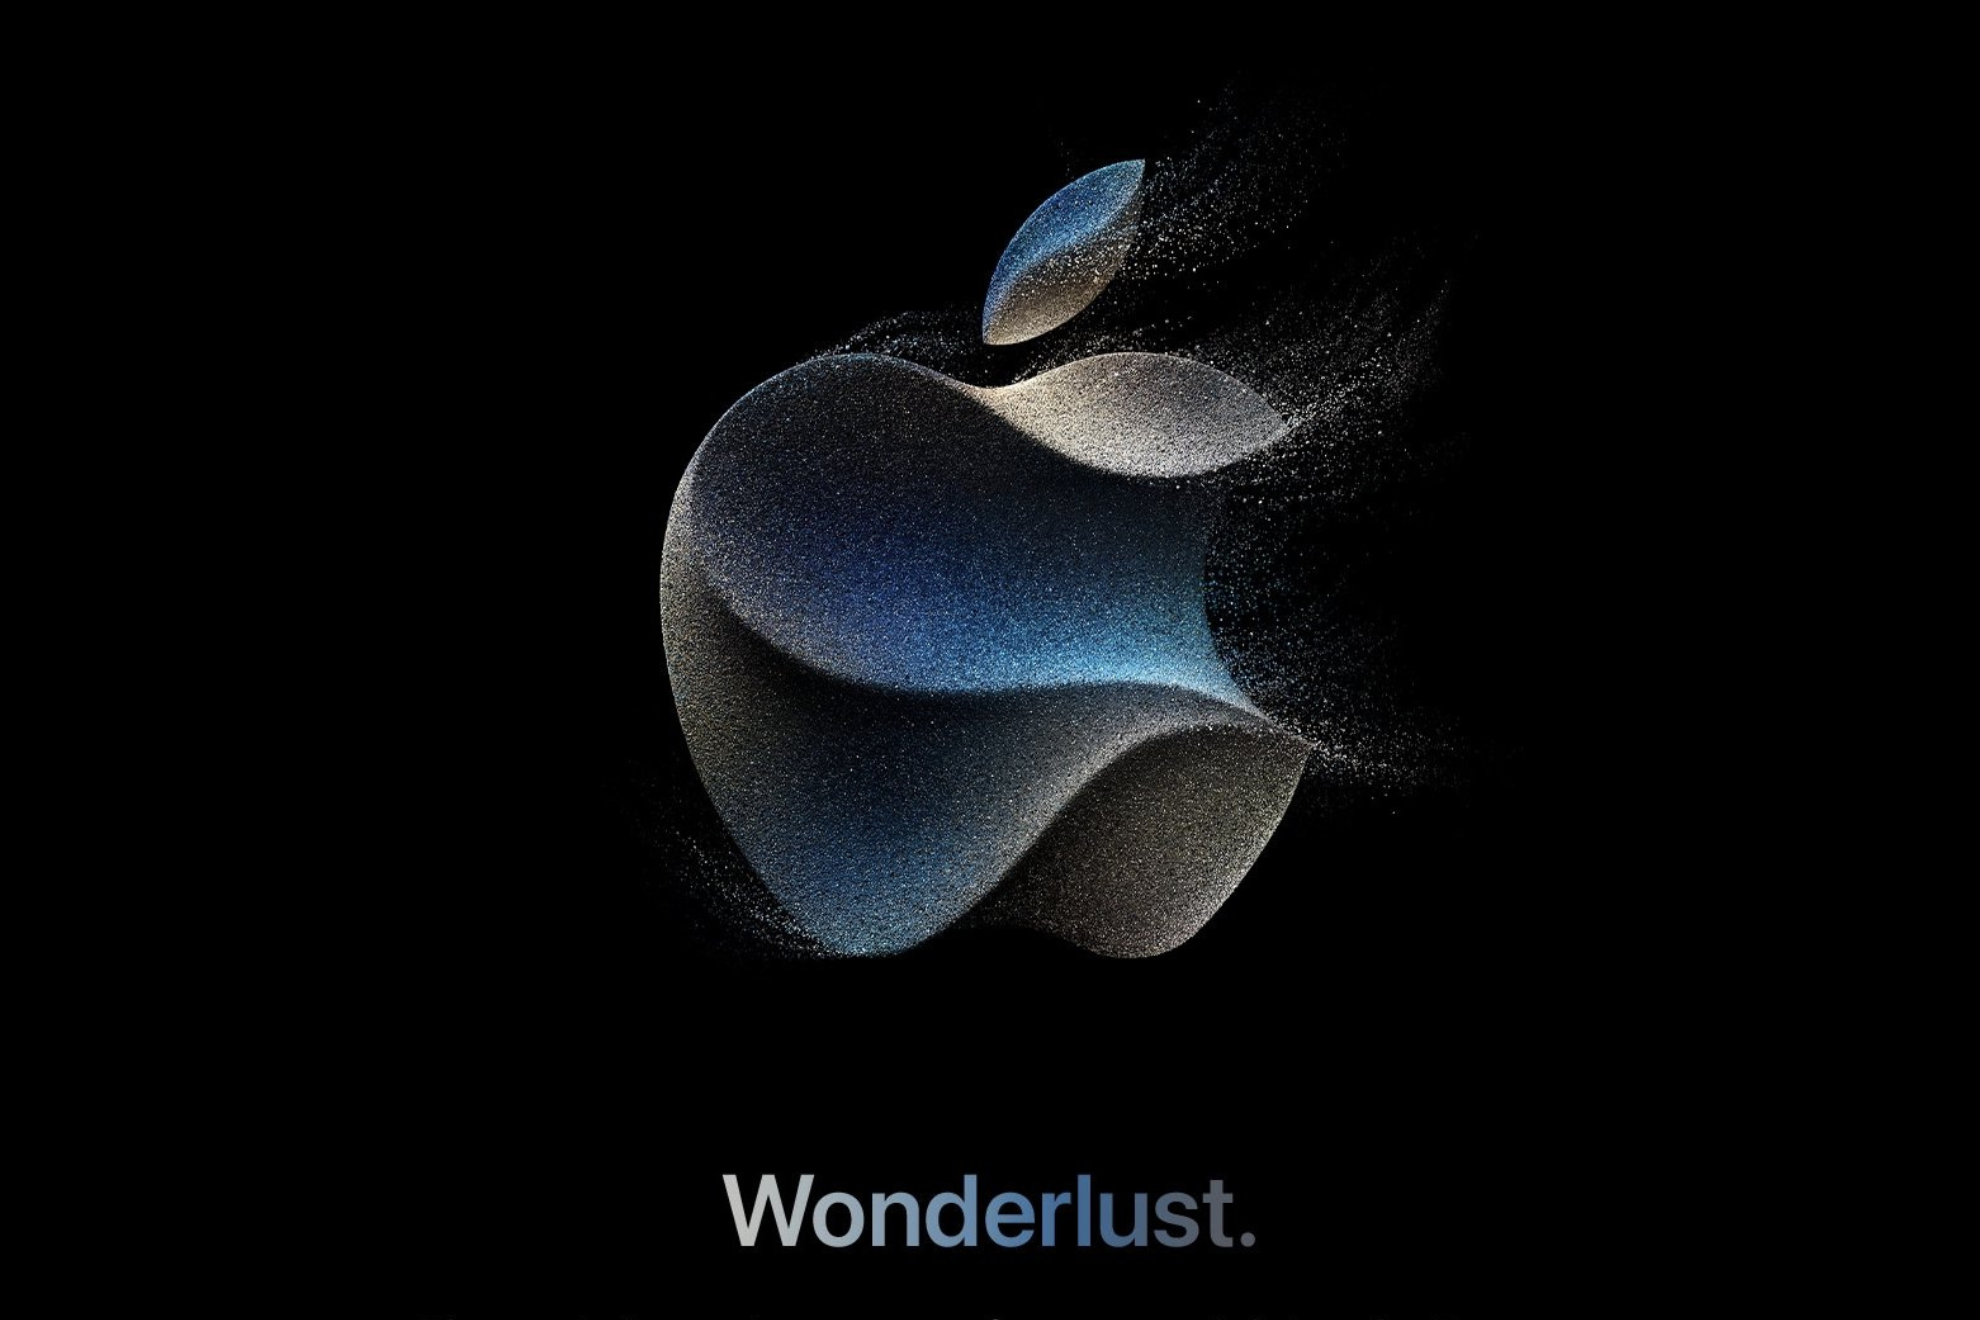 Apple's 2023 September Event is called "Wonderlust".